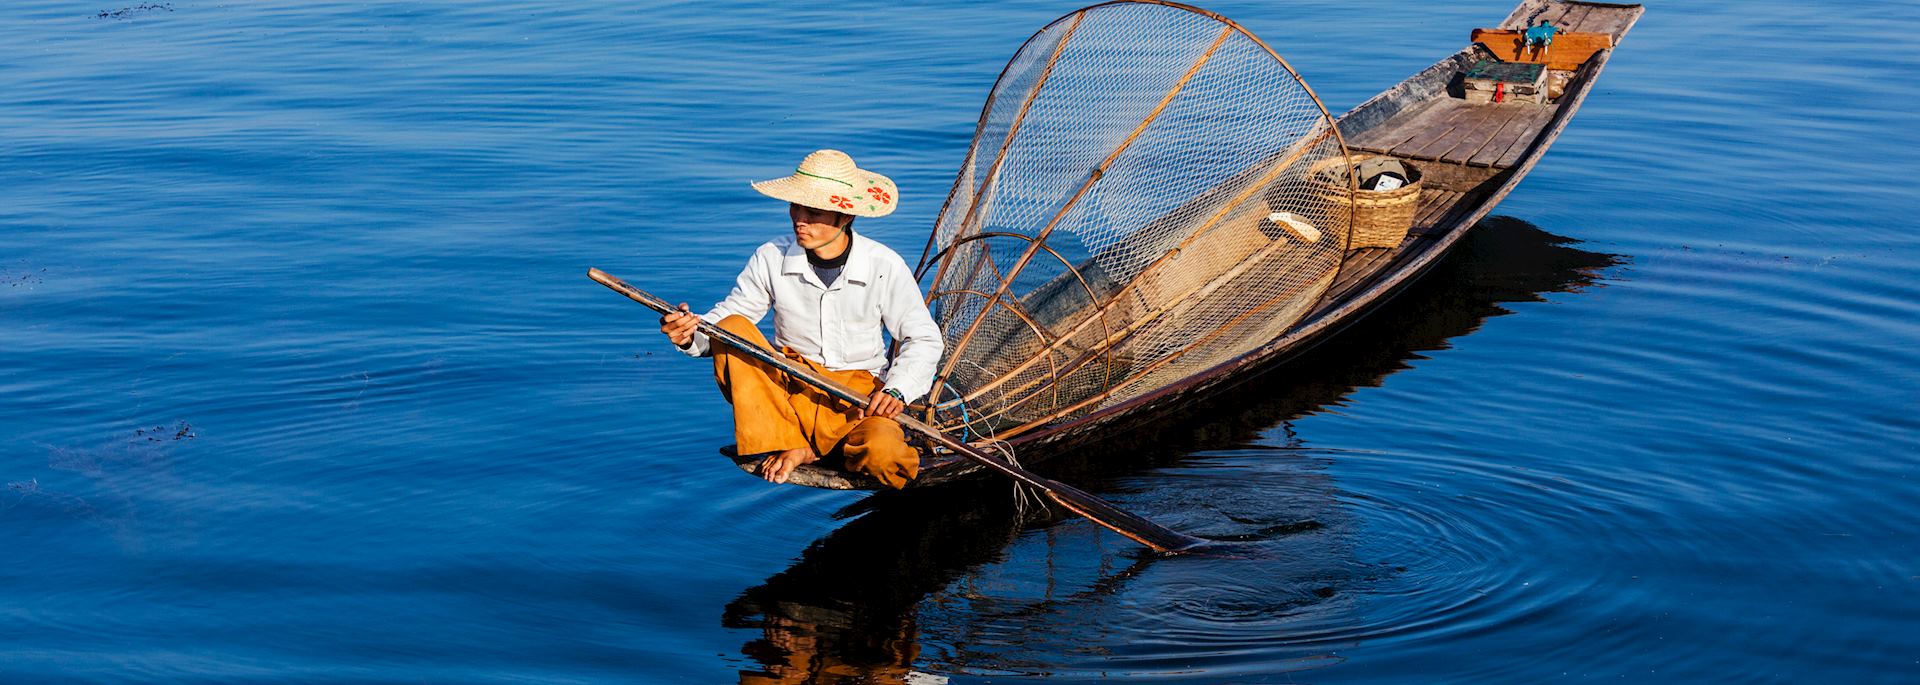  Fisherman on Inle Lake, Myanmar